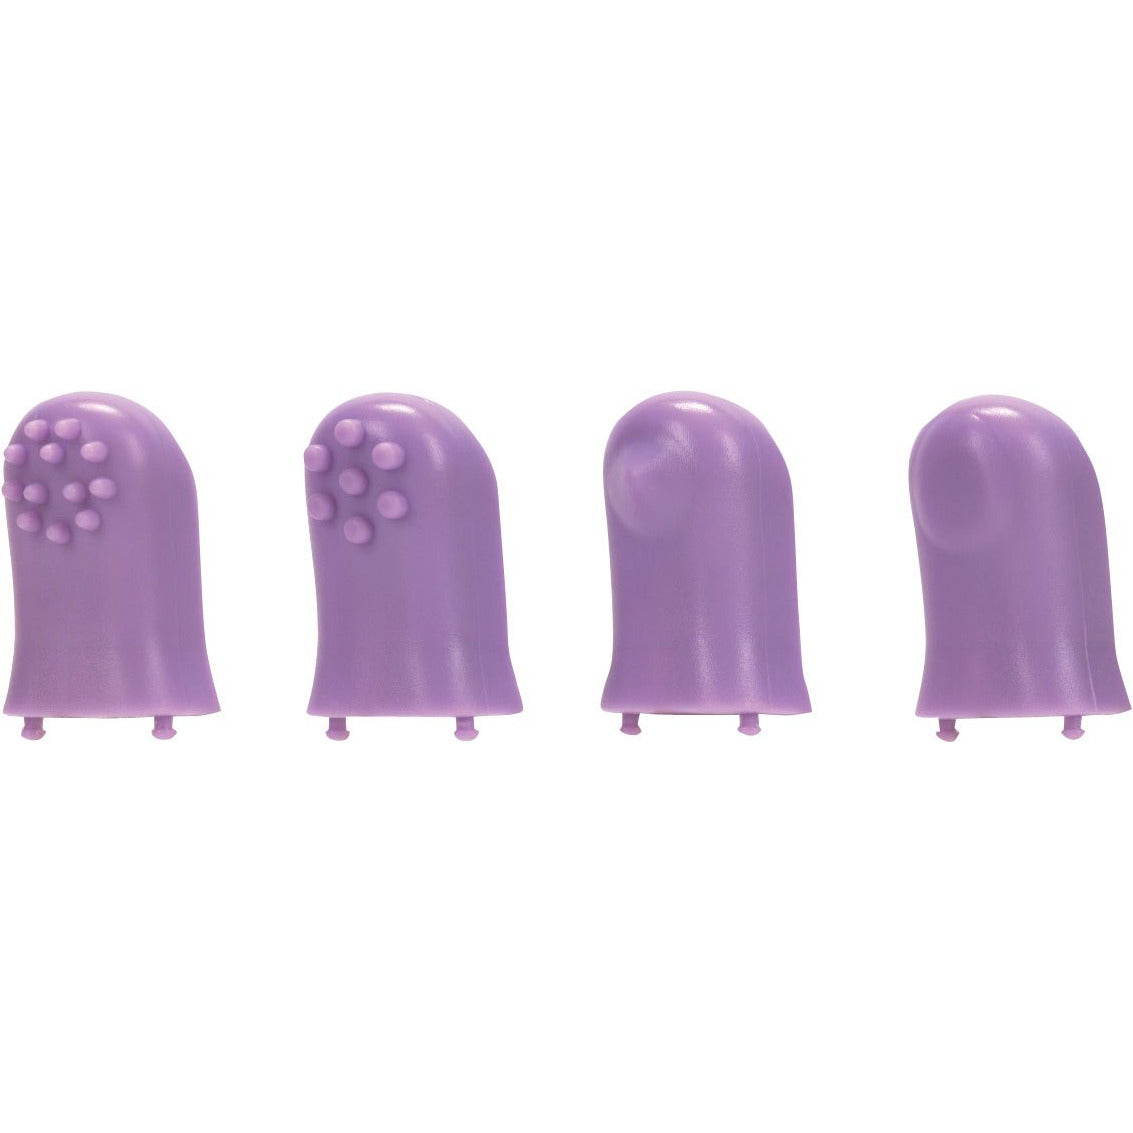 Turbo Finger 5 In 1 Massager - Purple